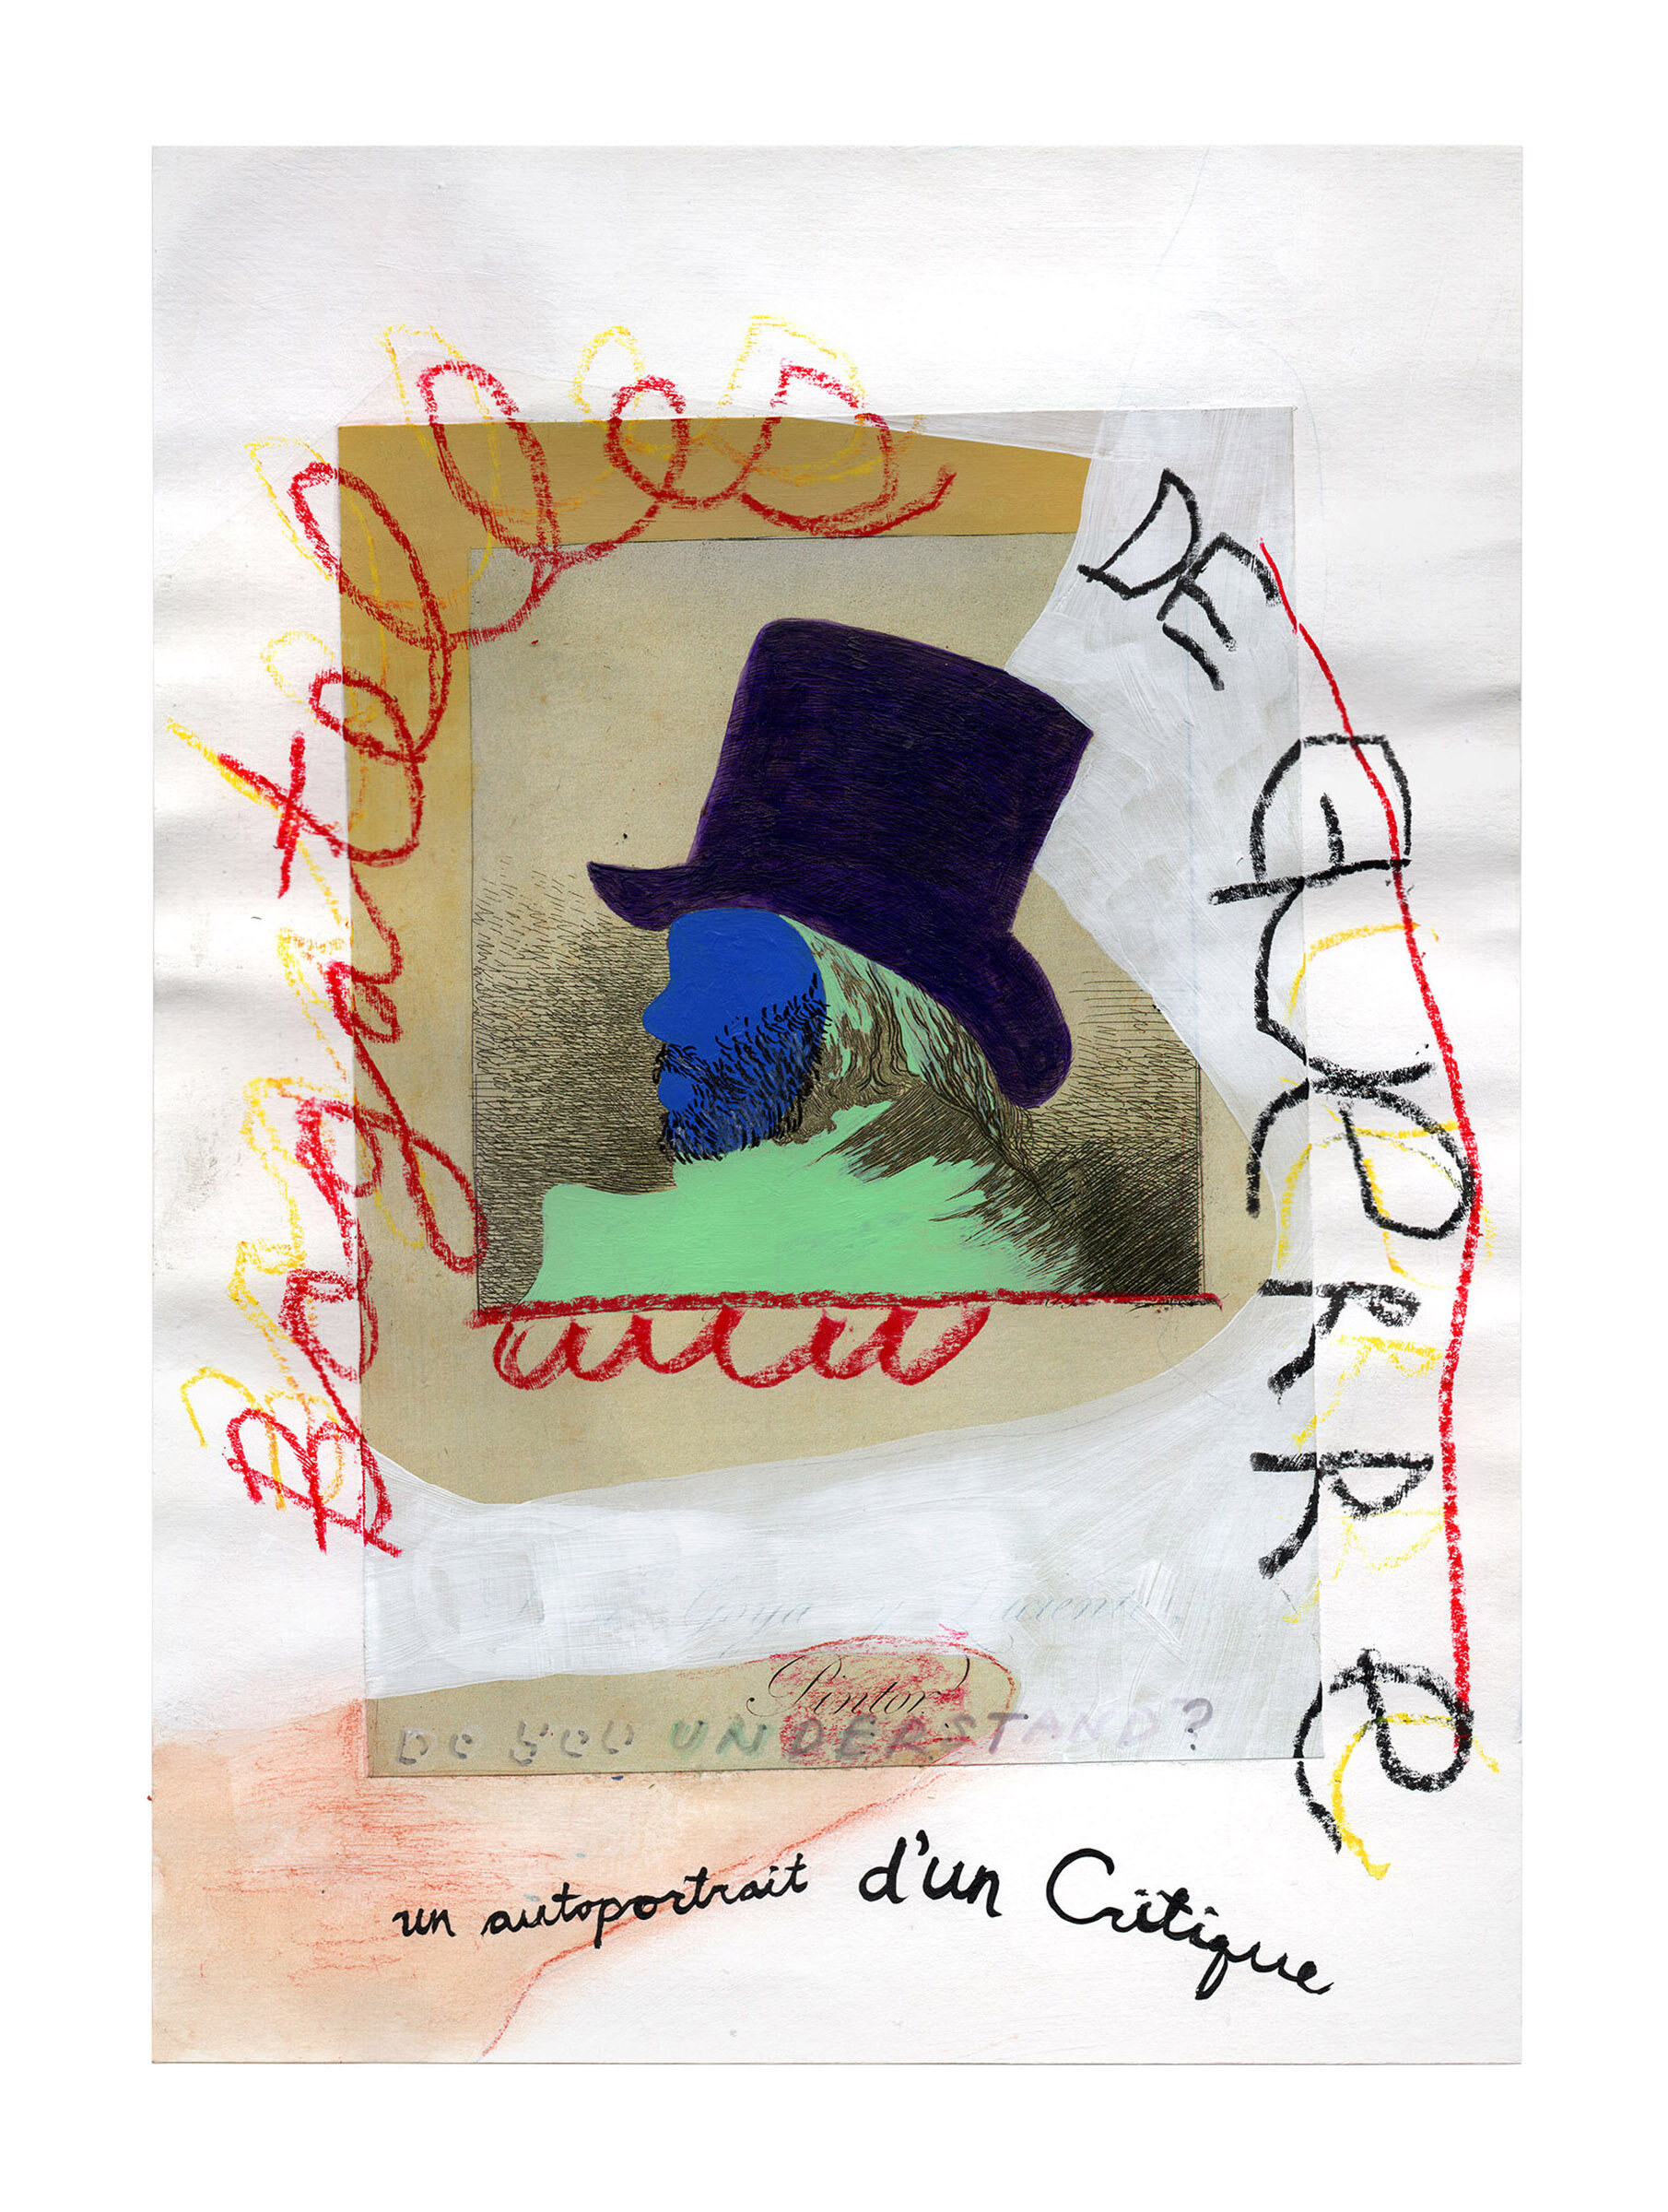   Un autoportrait d’un critique  Acrylic, crayon, ink and collage on paper 14 x 10 inches 2019 